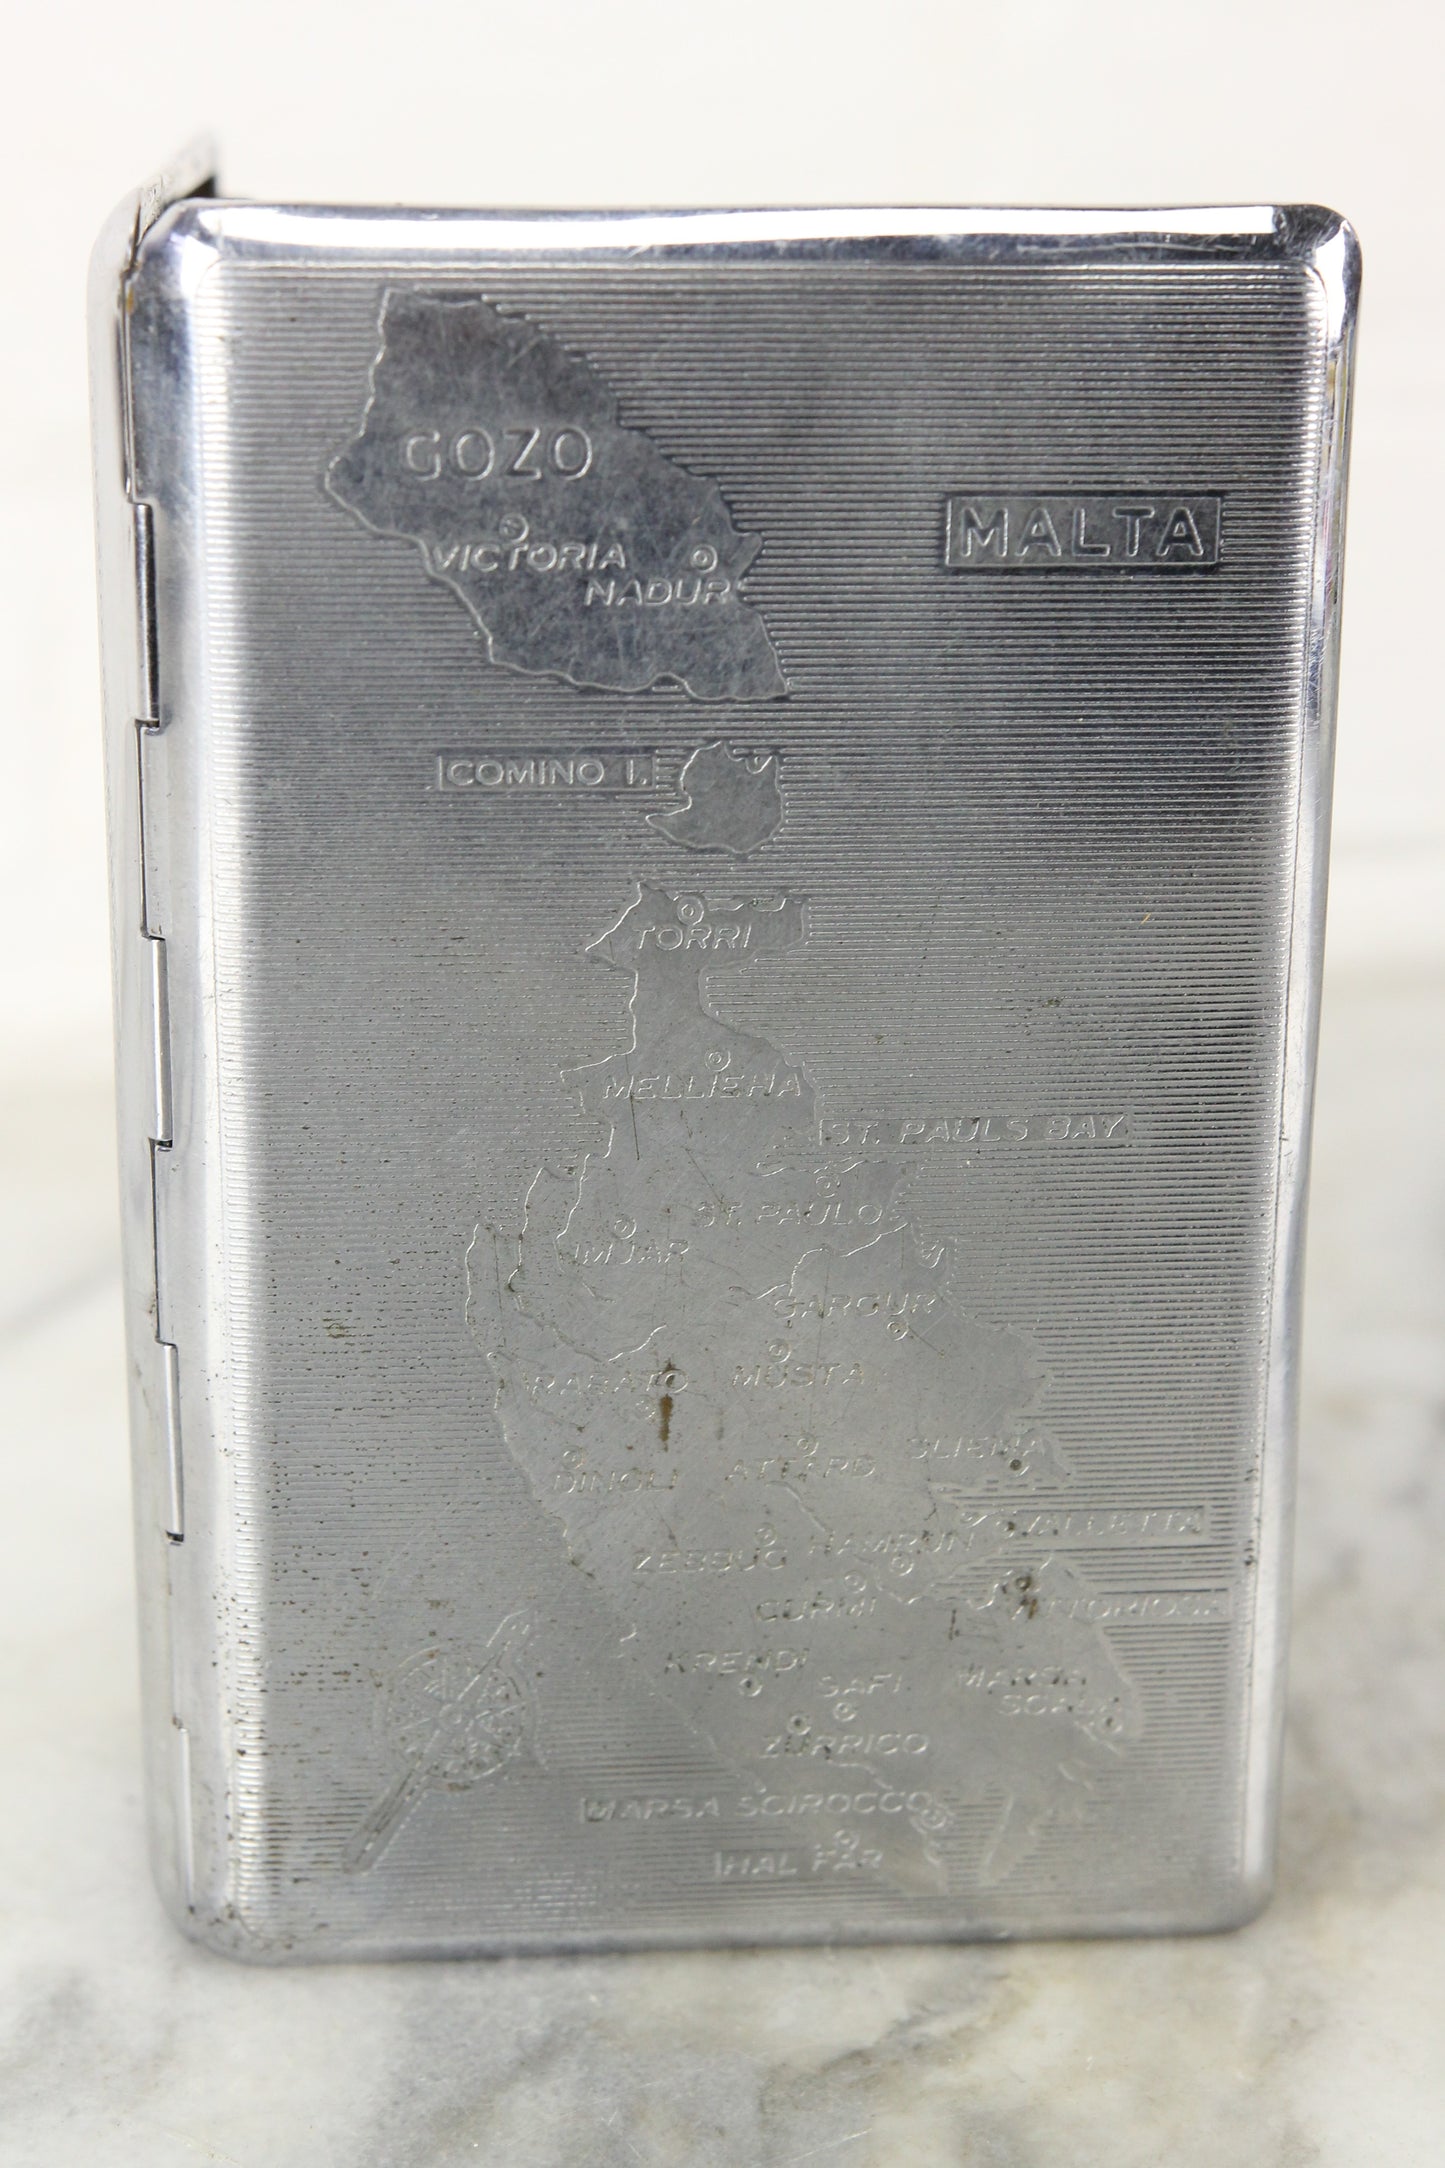 Malta Polished Chrome Cigarette Case Holder by Tallent, England - Engraved 1949